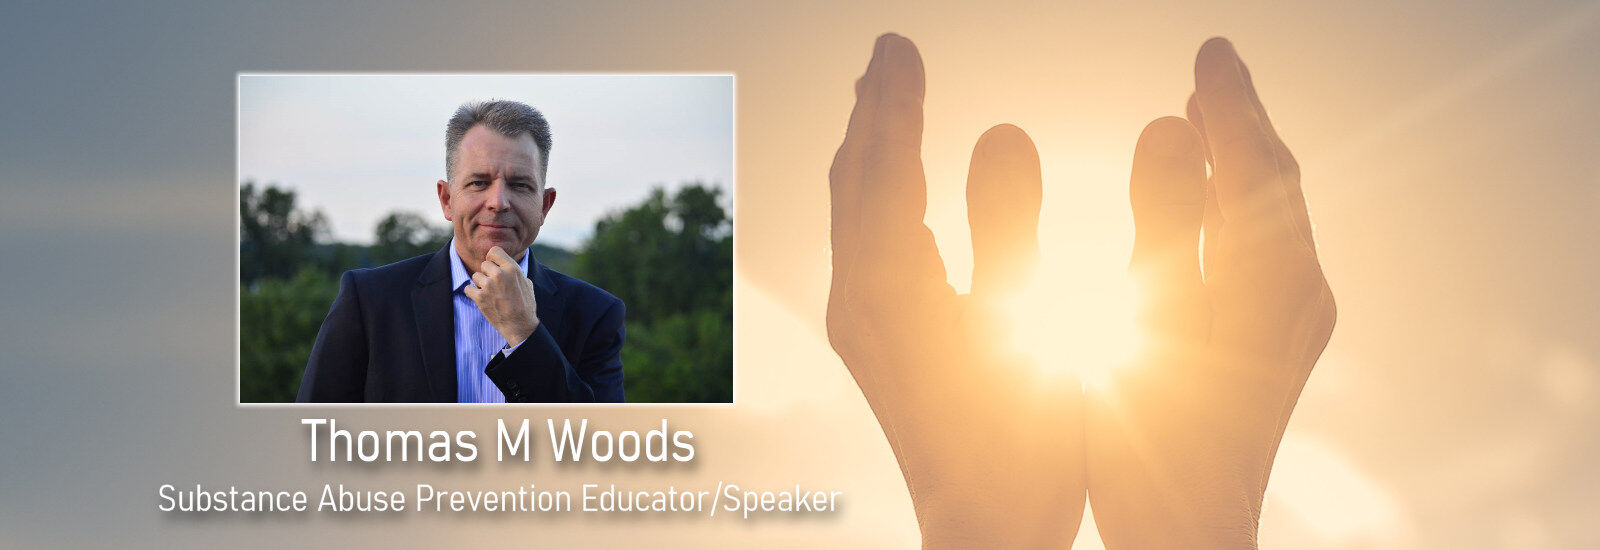 Thomas M Woods ~ Substance Abuse Prevention Educator/Speaker